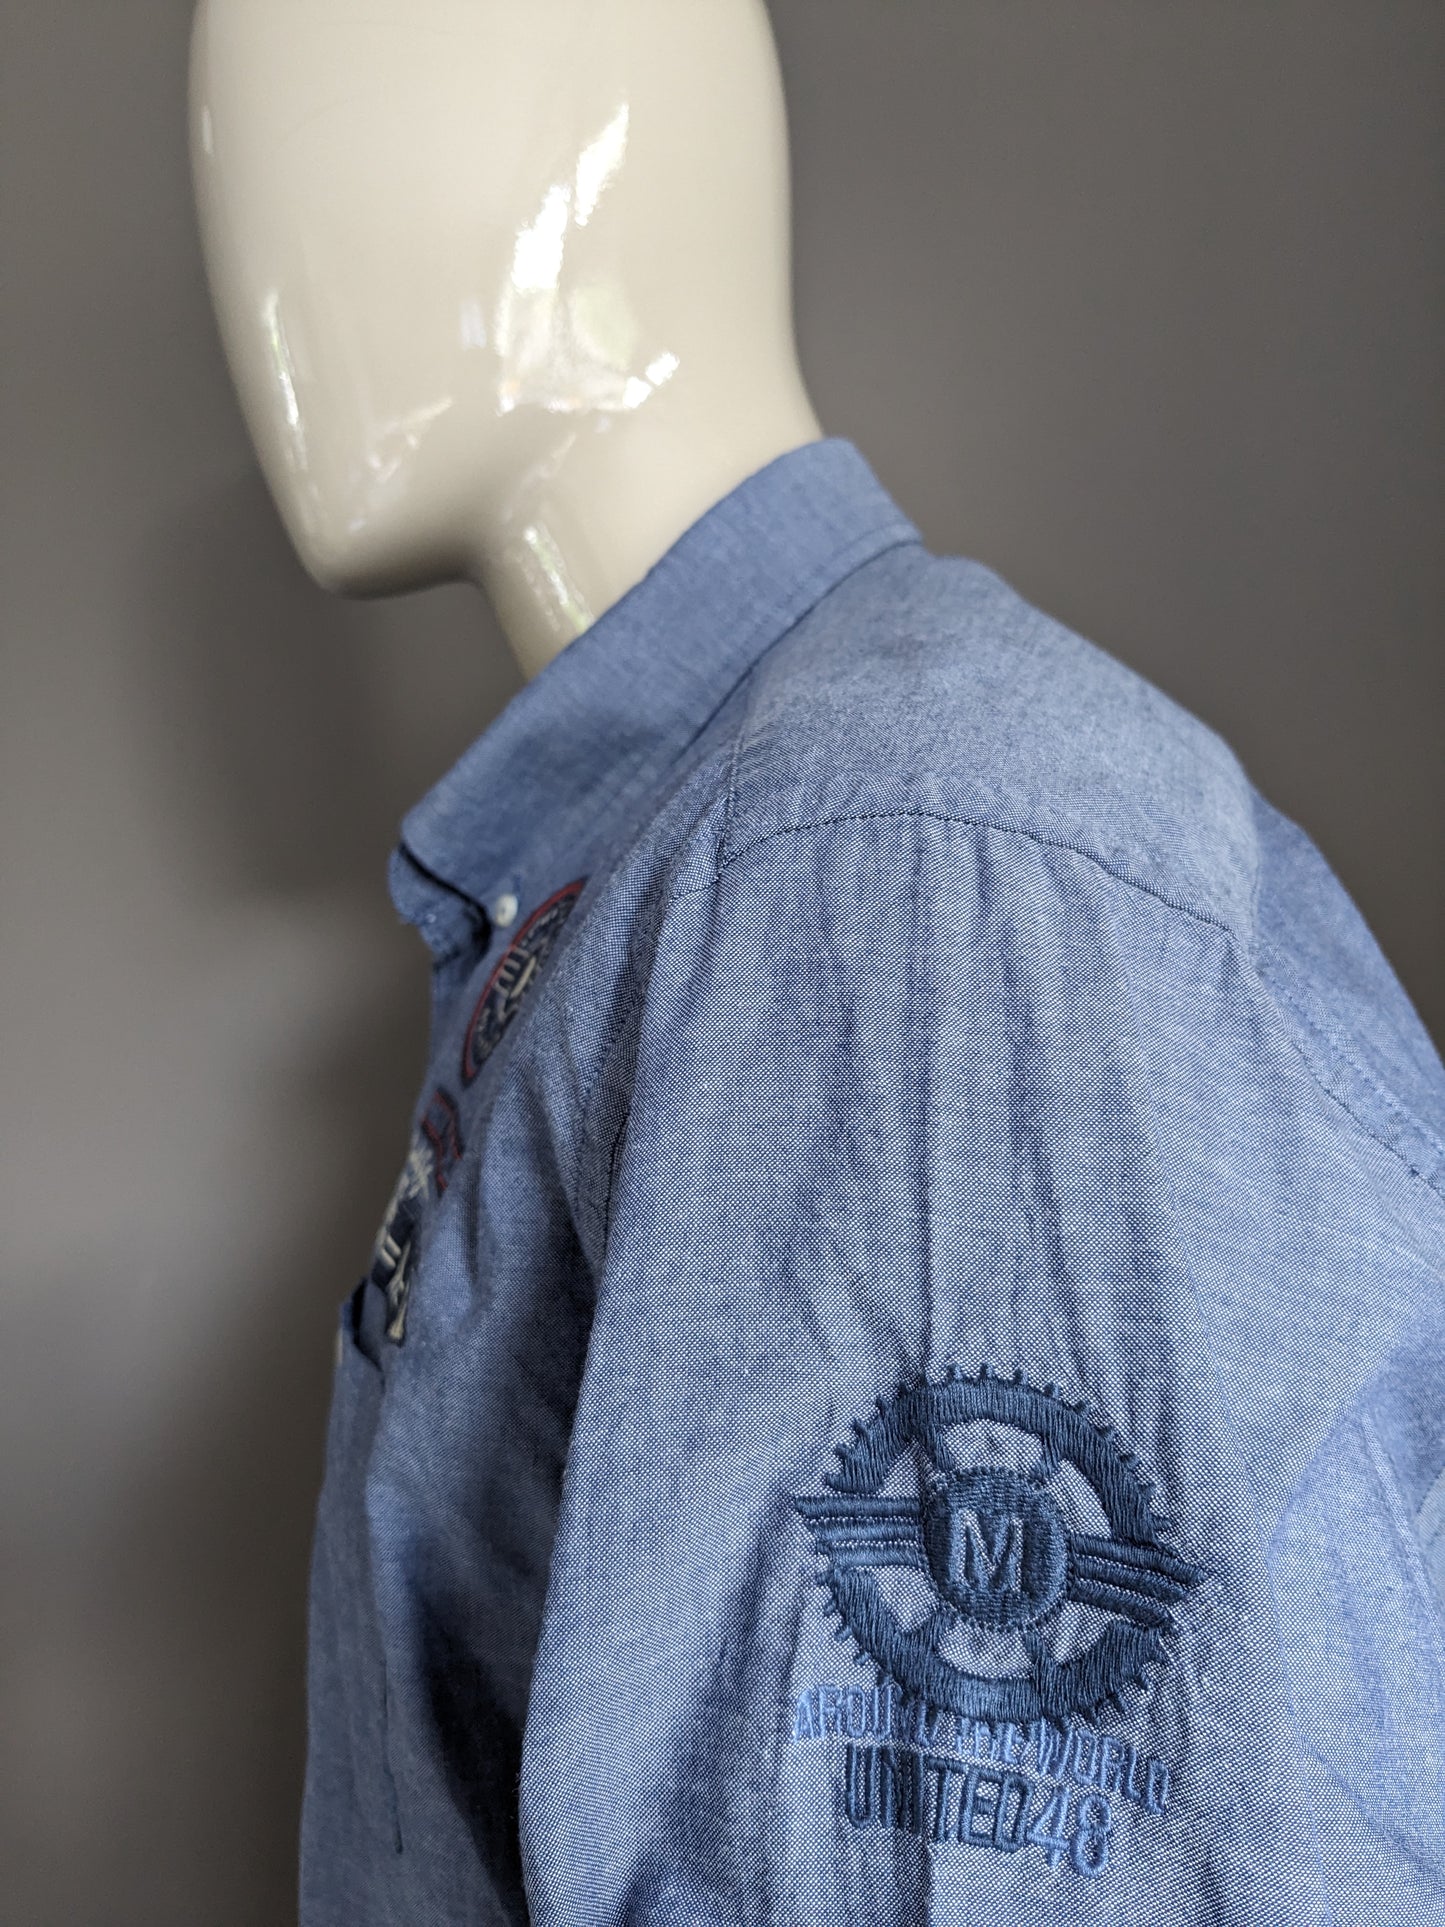 Tailor & Son overhemd. Blauw gemêleerd met applicaties. Maat 2XL / XXL.